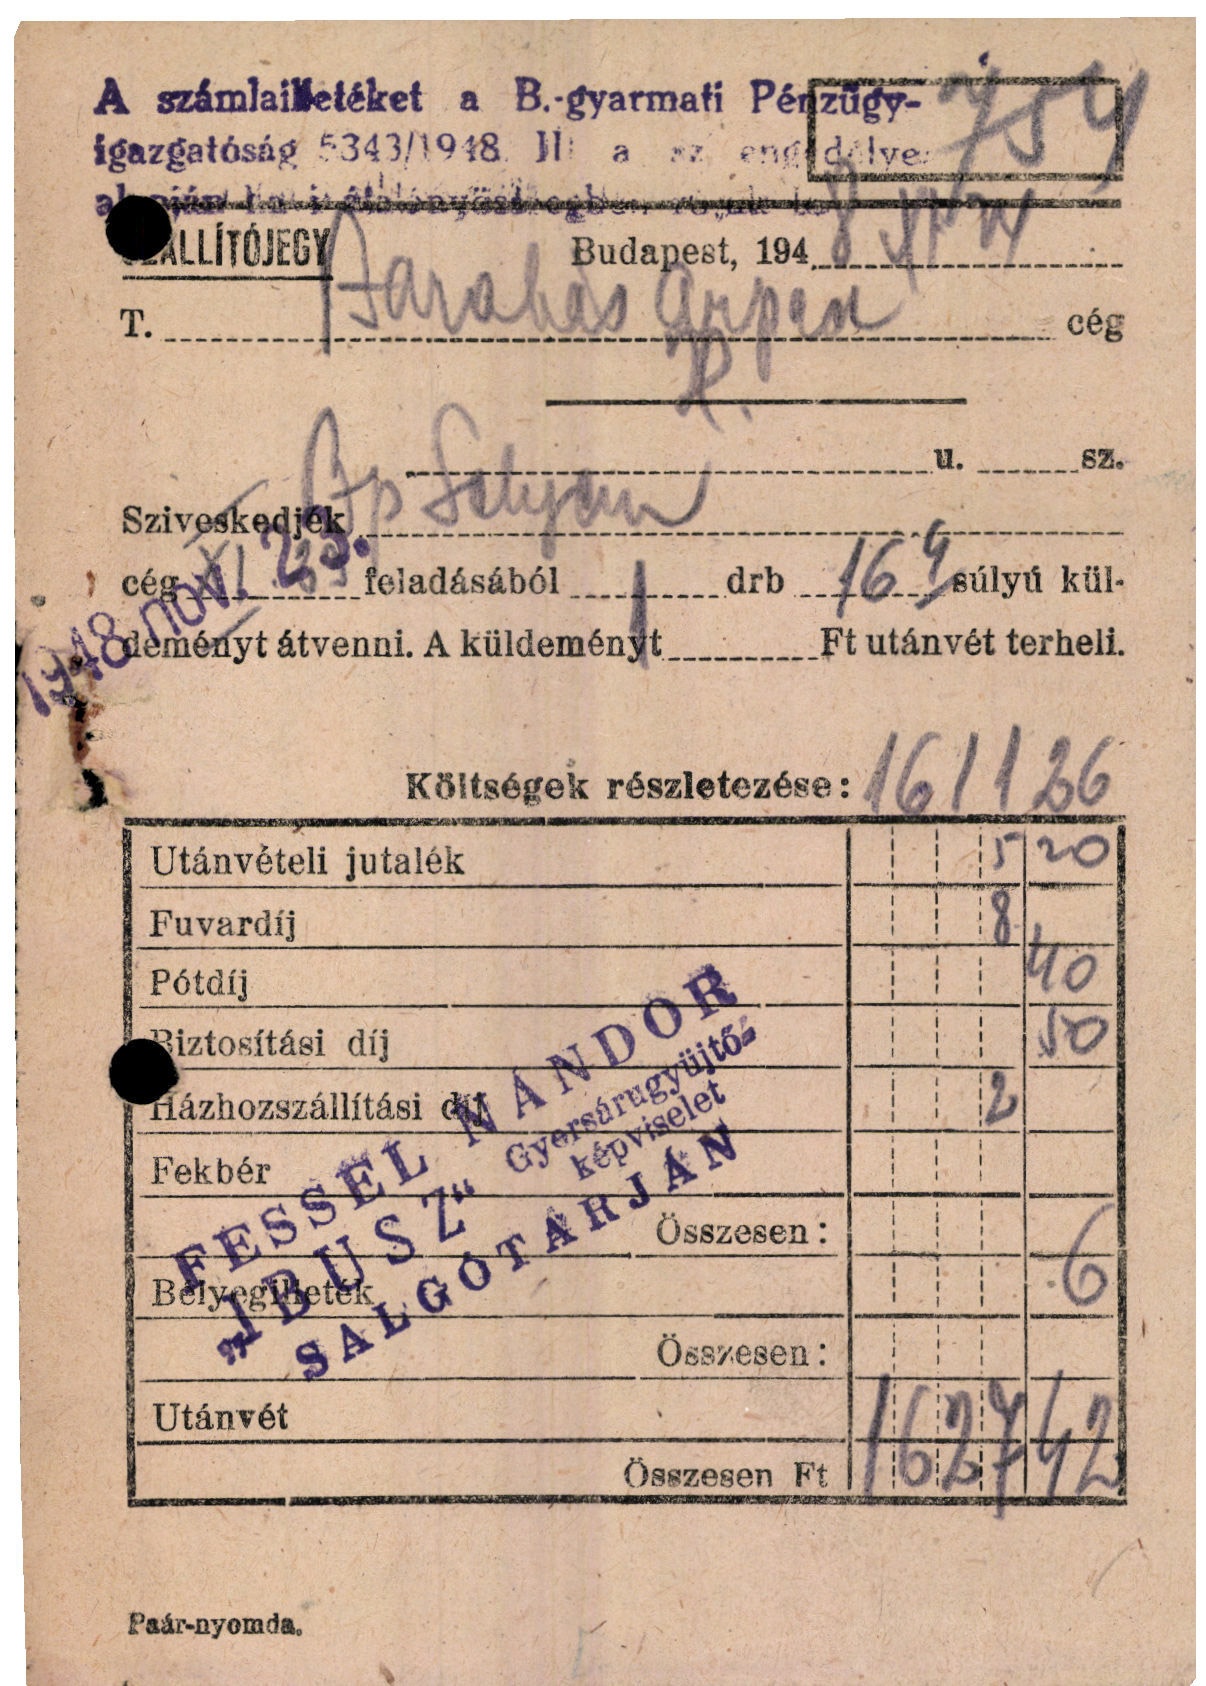 Fessel Nándor "IBUSZ" gyorsárugyűjtő képviselet (Magyar Kereskedelmi és Vendéglátóipari Múzeum CC BY-NC-SA)